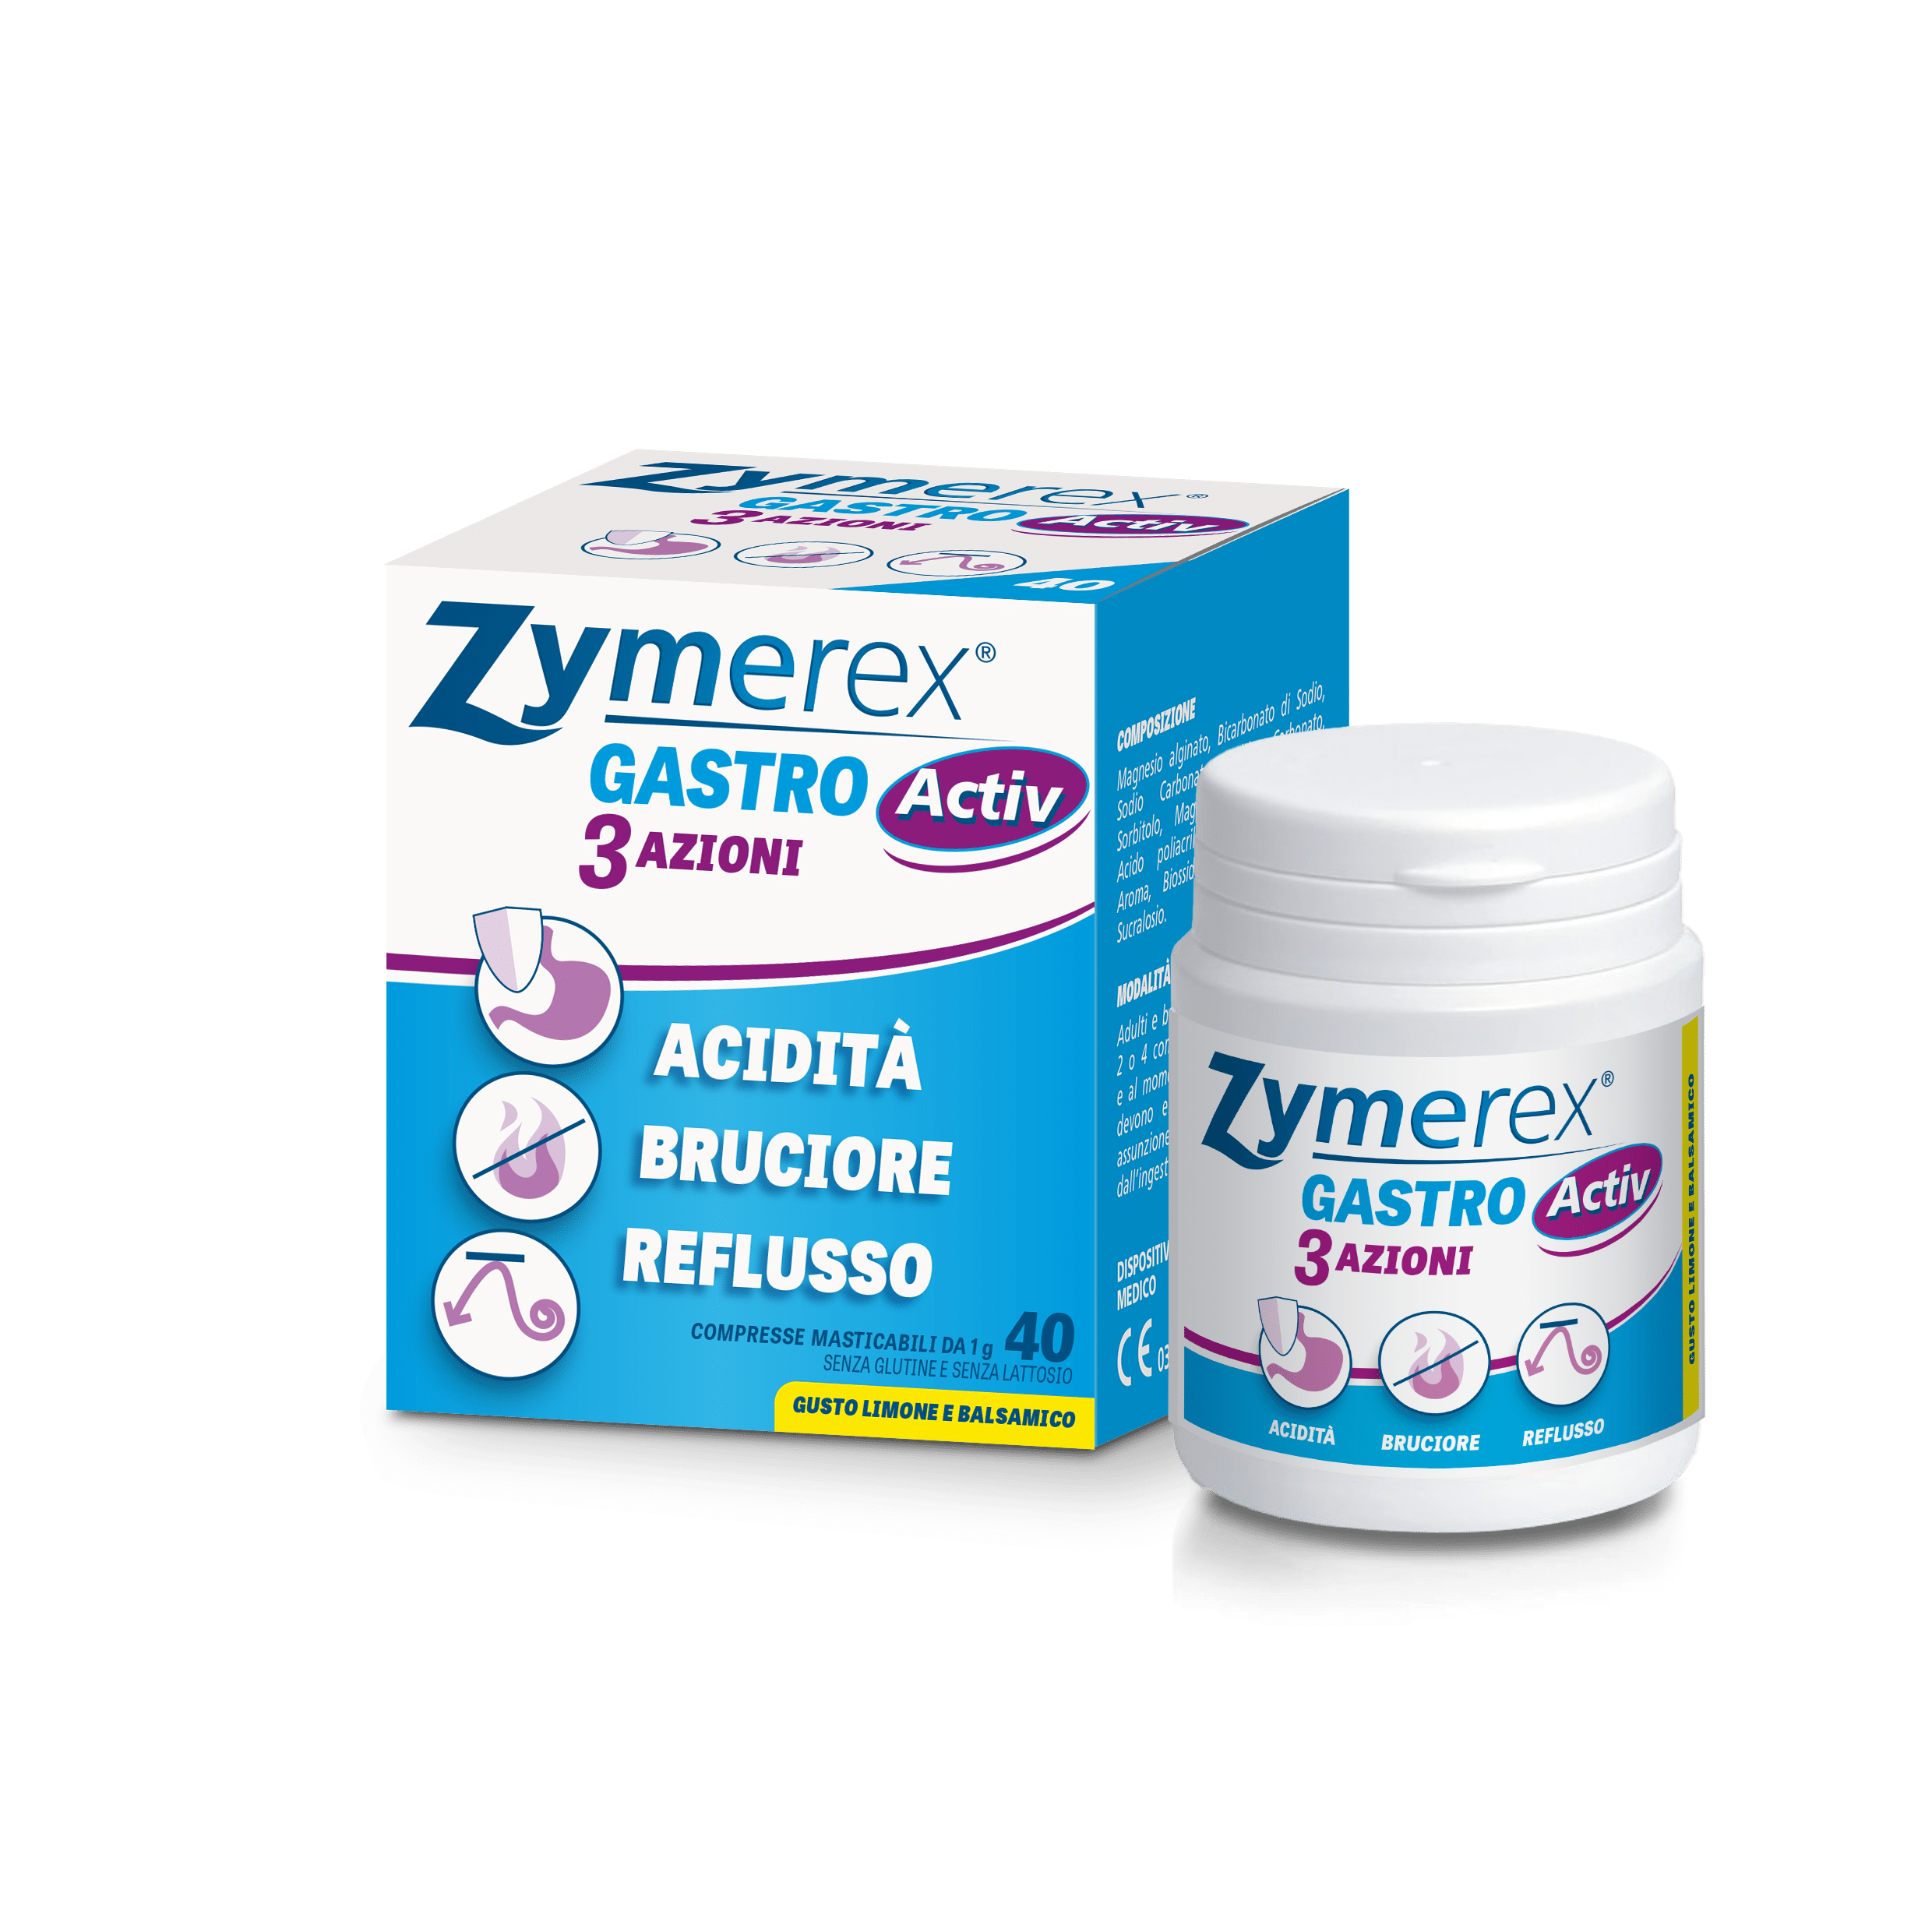 Zymerex Gastro Activ